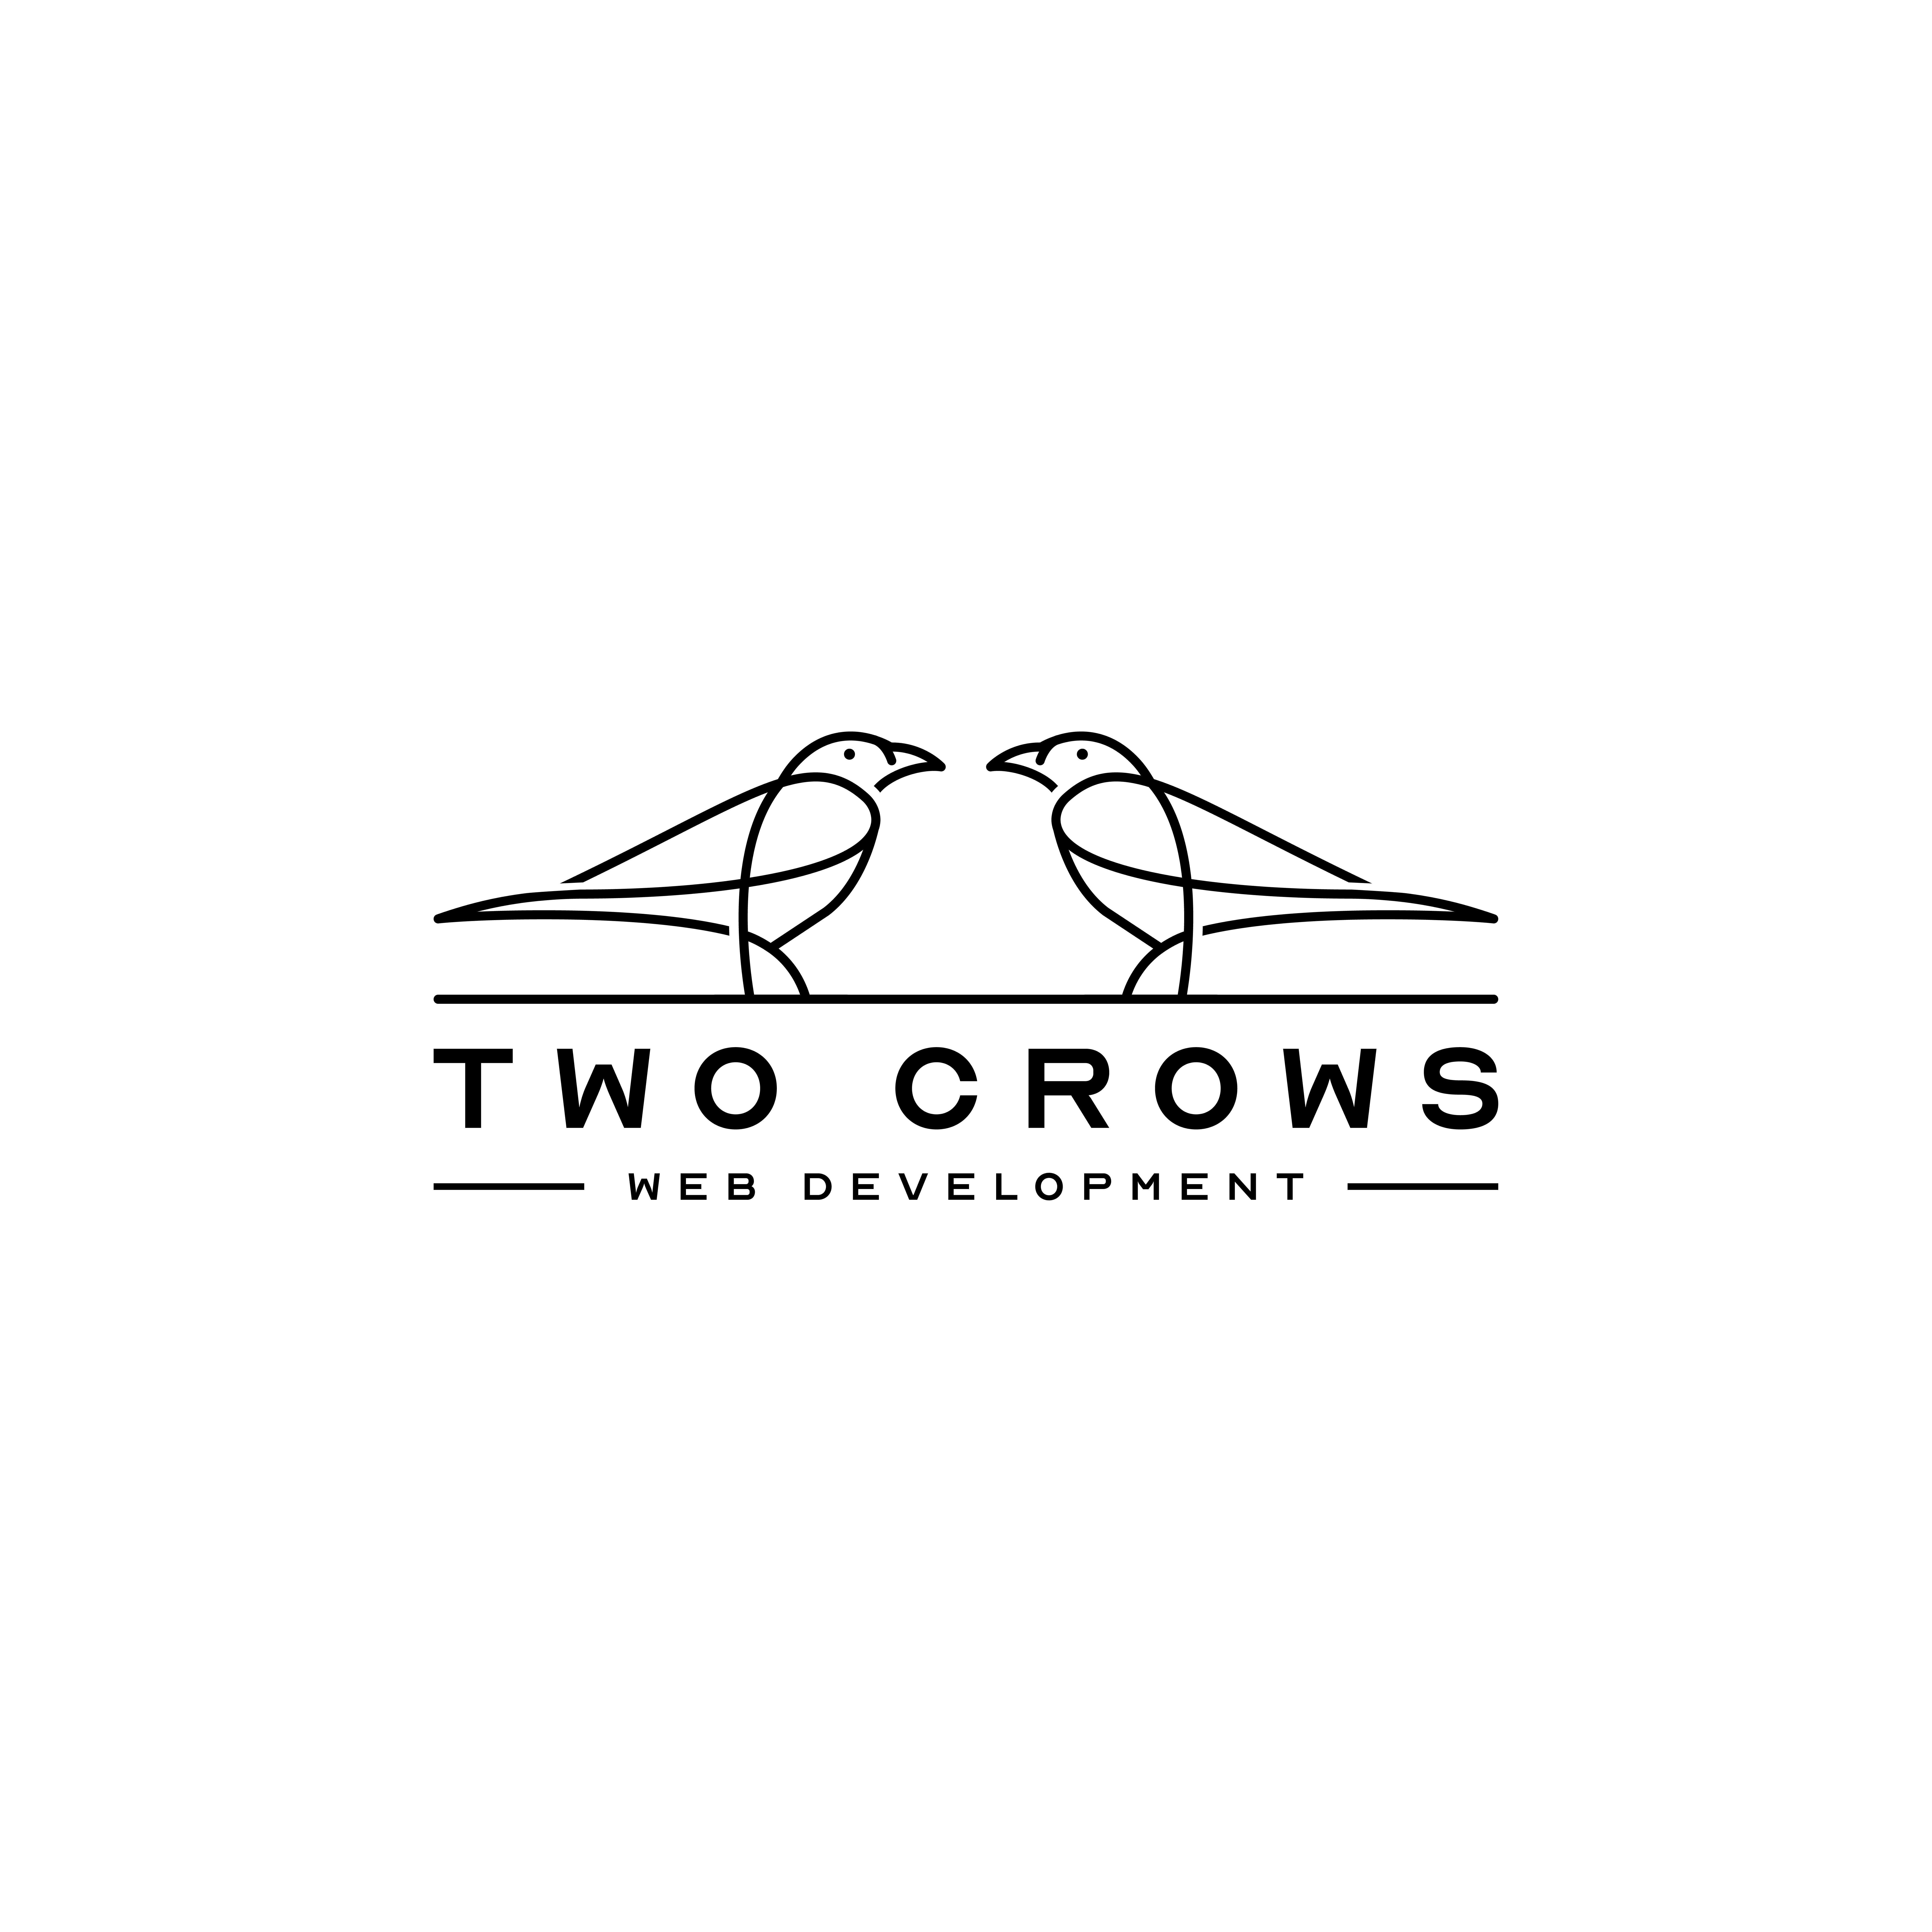 Two Crows Web Development Logo